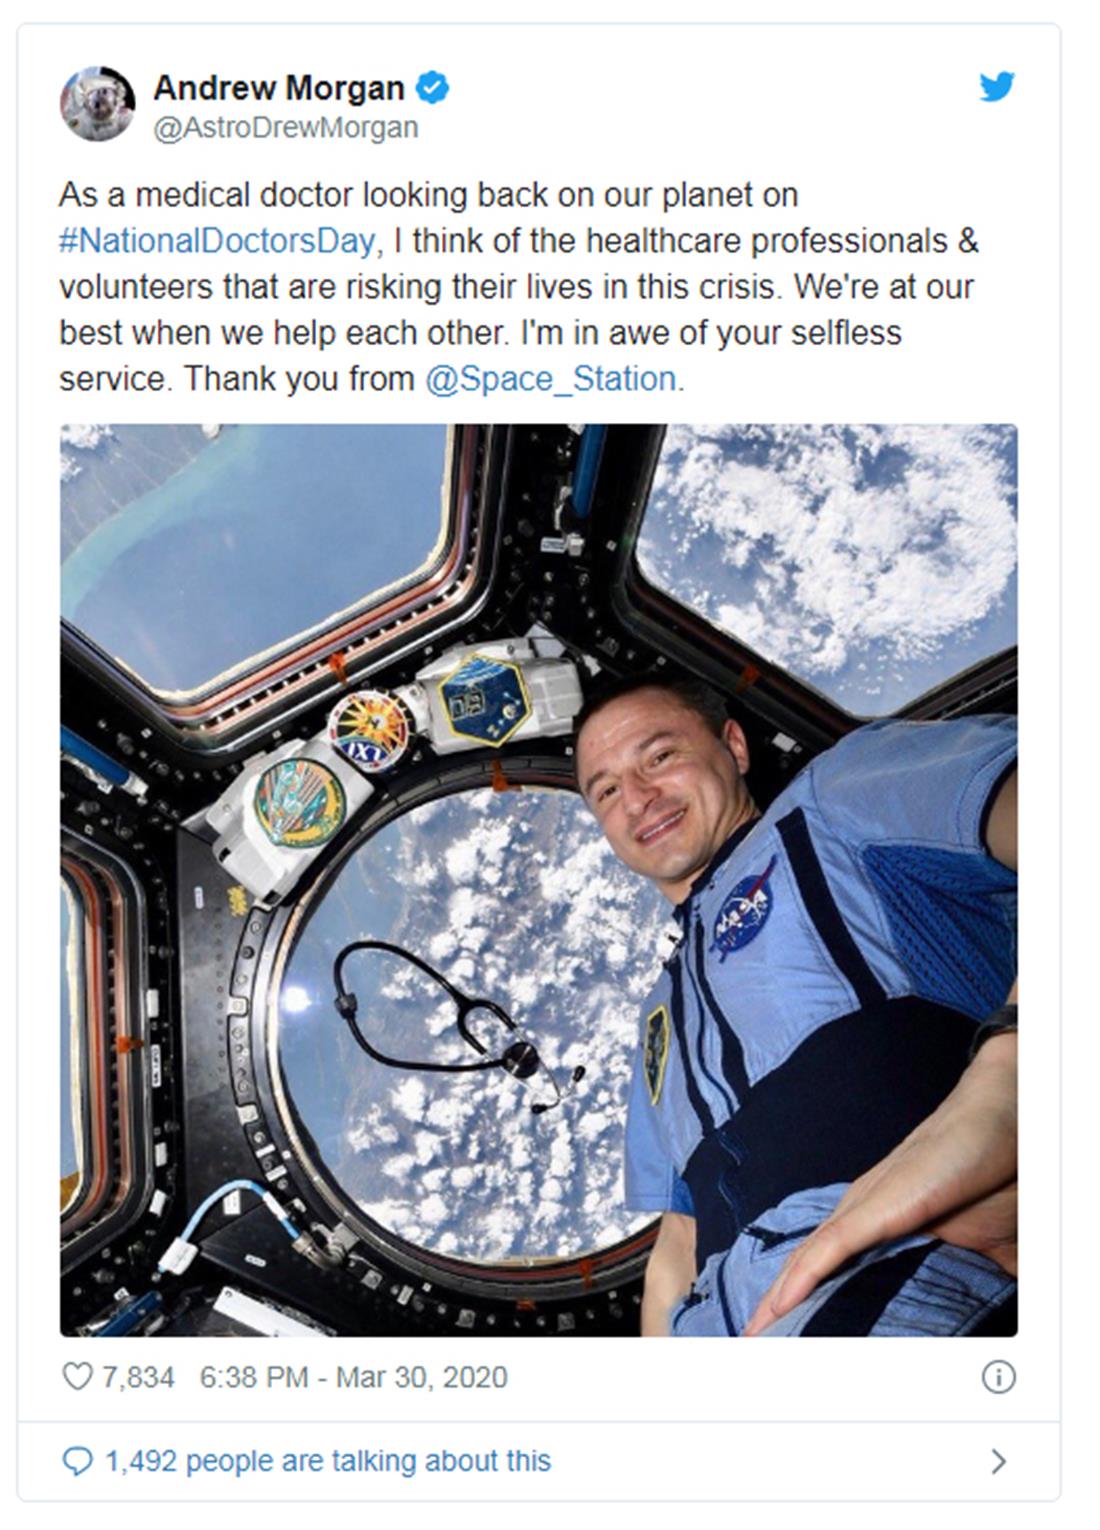 αστροναύτης - NASA - Άντριου Μόργκαν - φωτογραφία - ιατρο-νοσηλευτικό προσωπικό